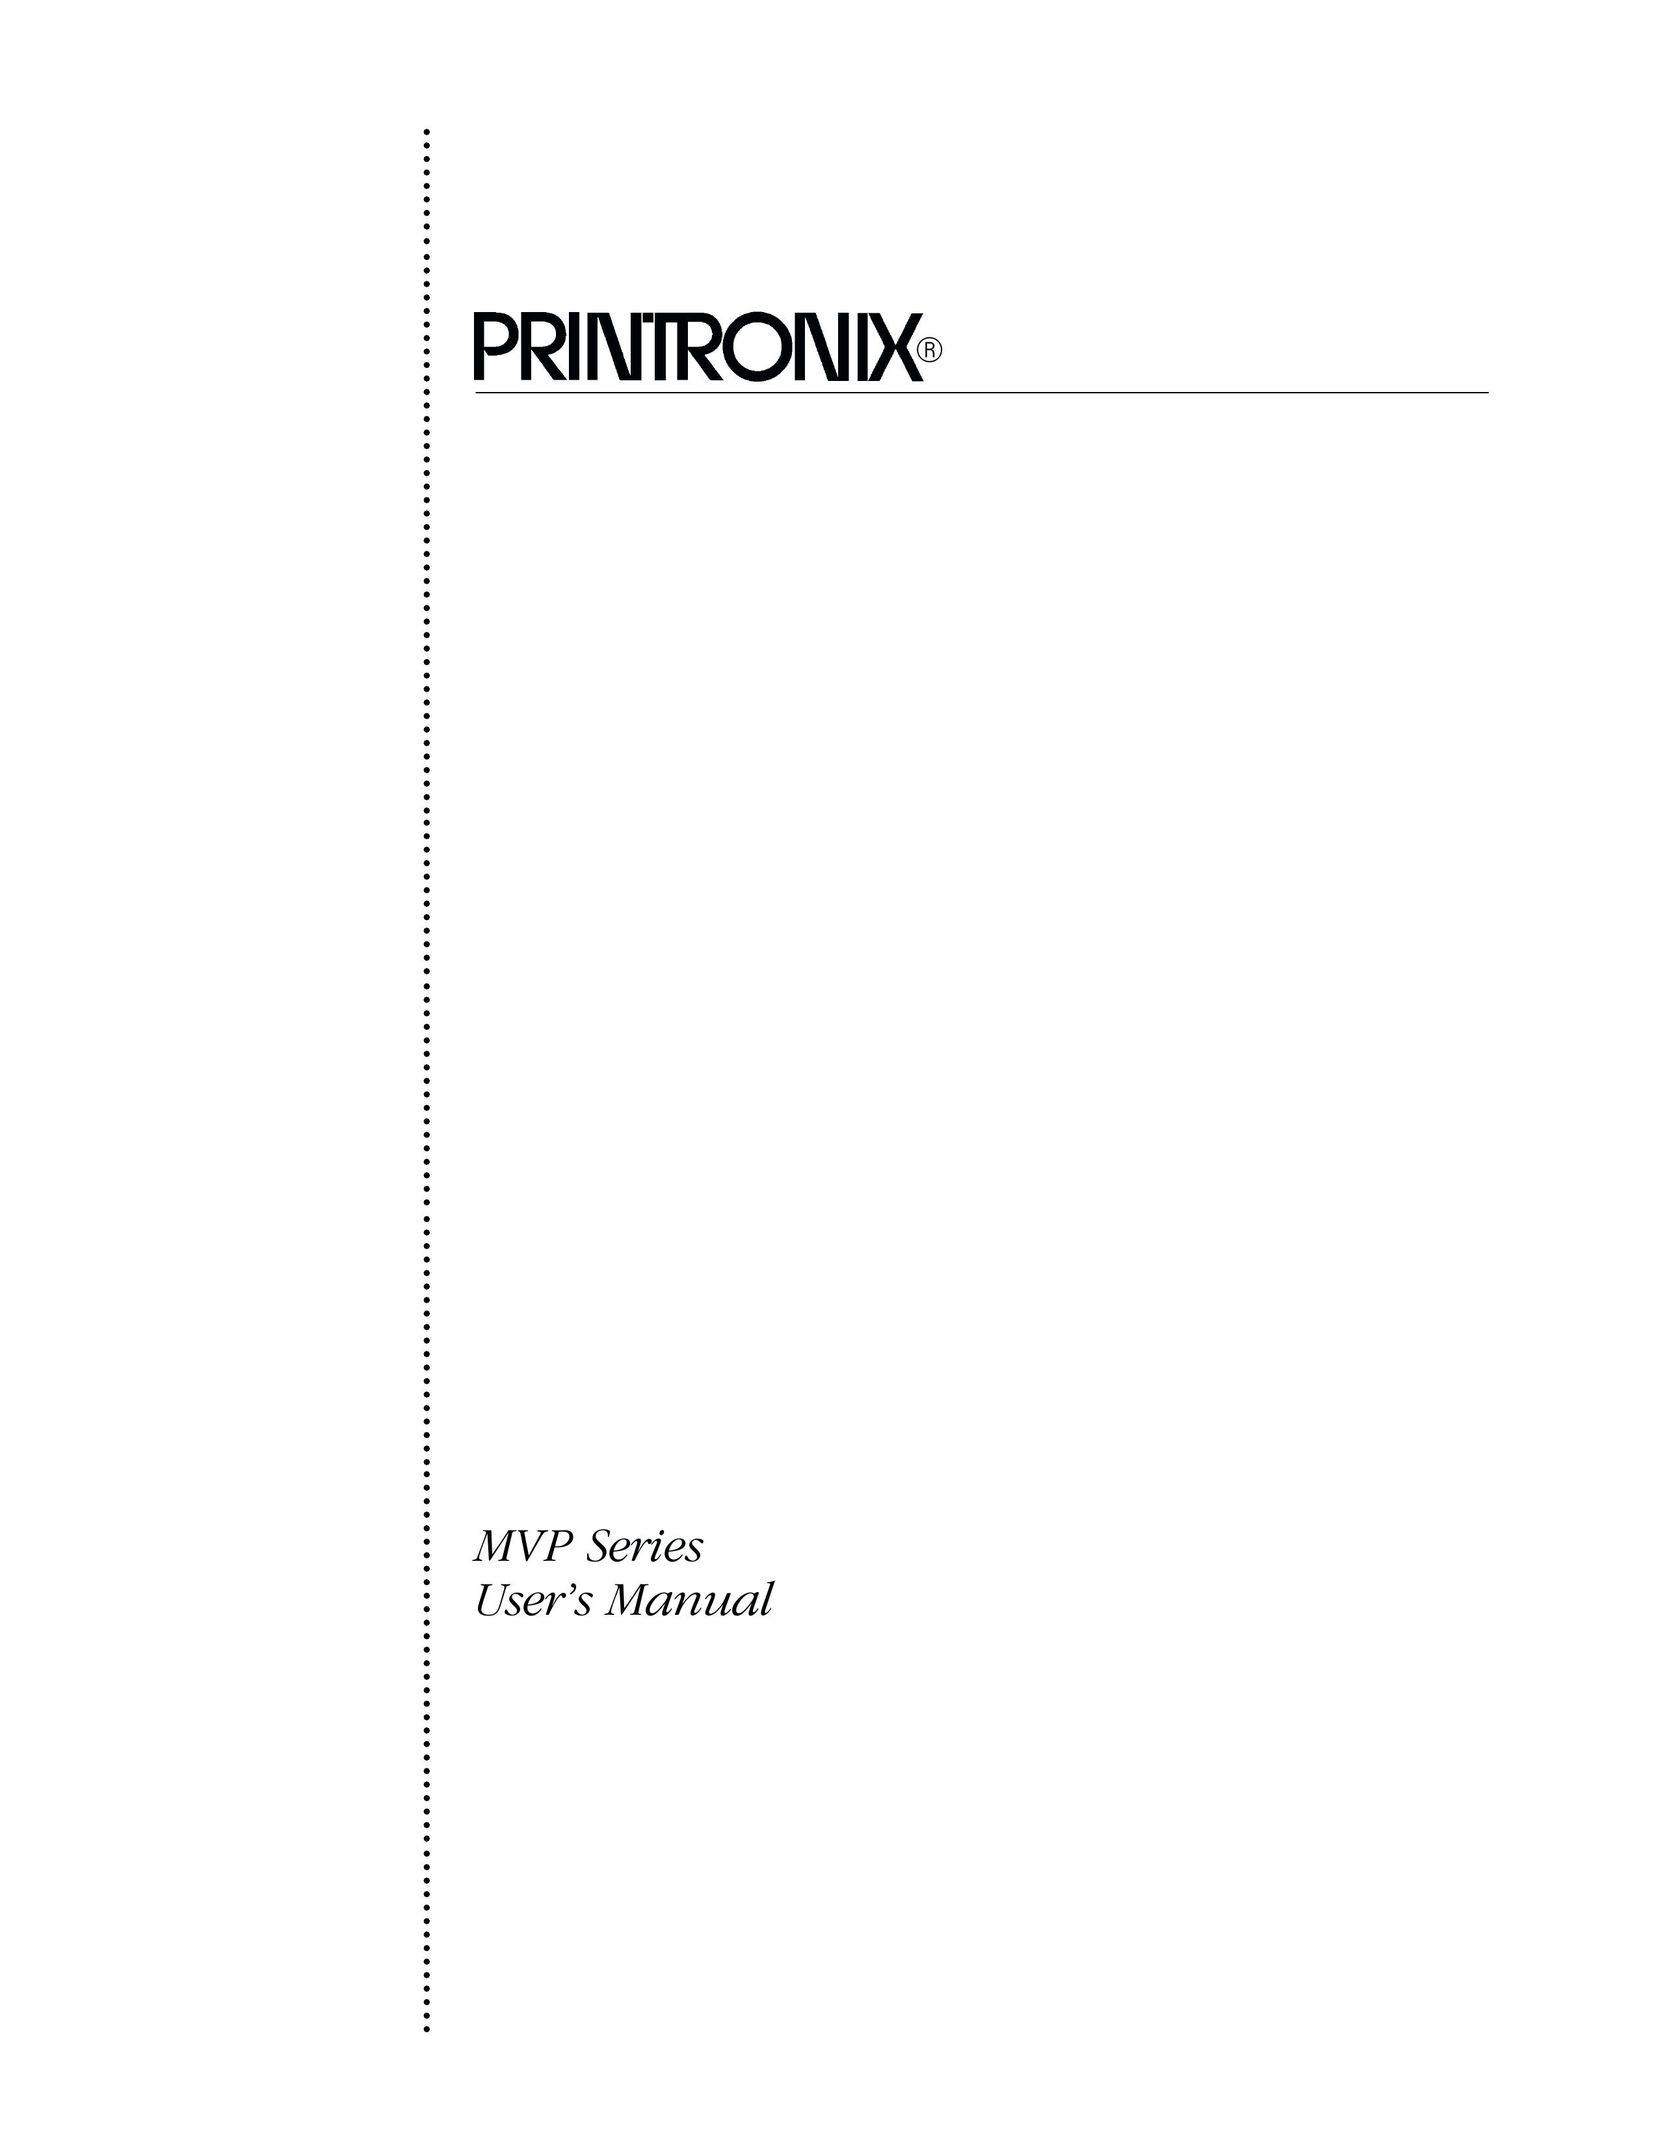 Printronix MVP Series Printer User Manual